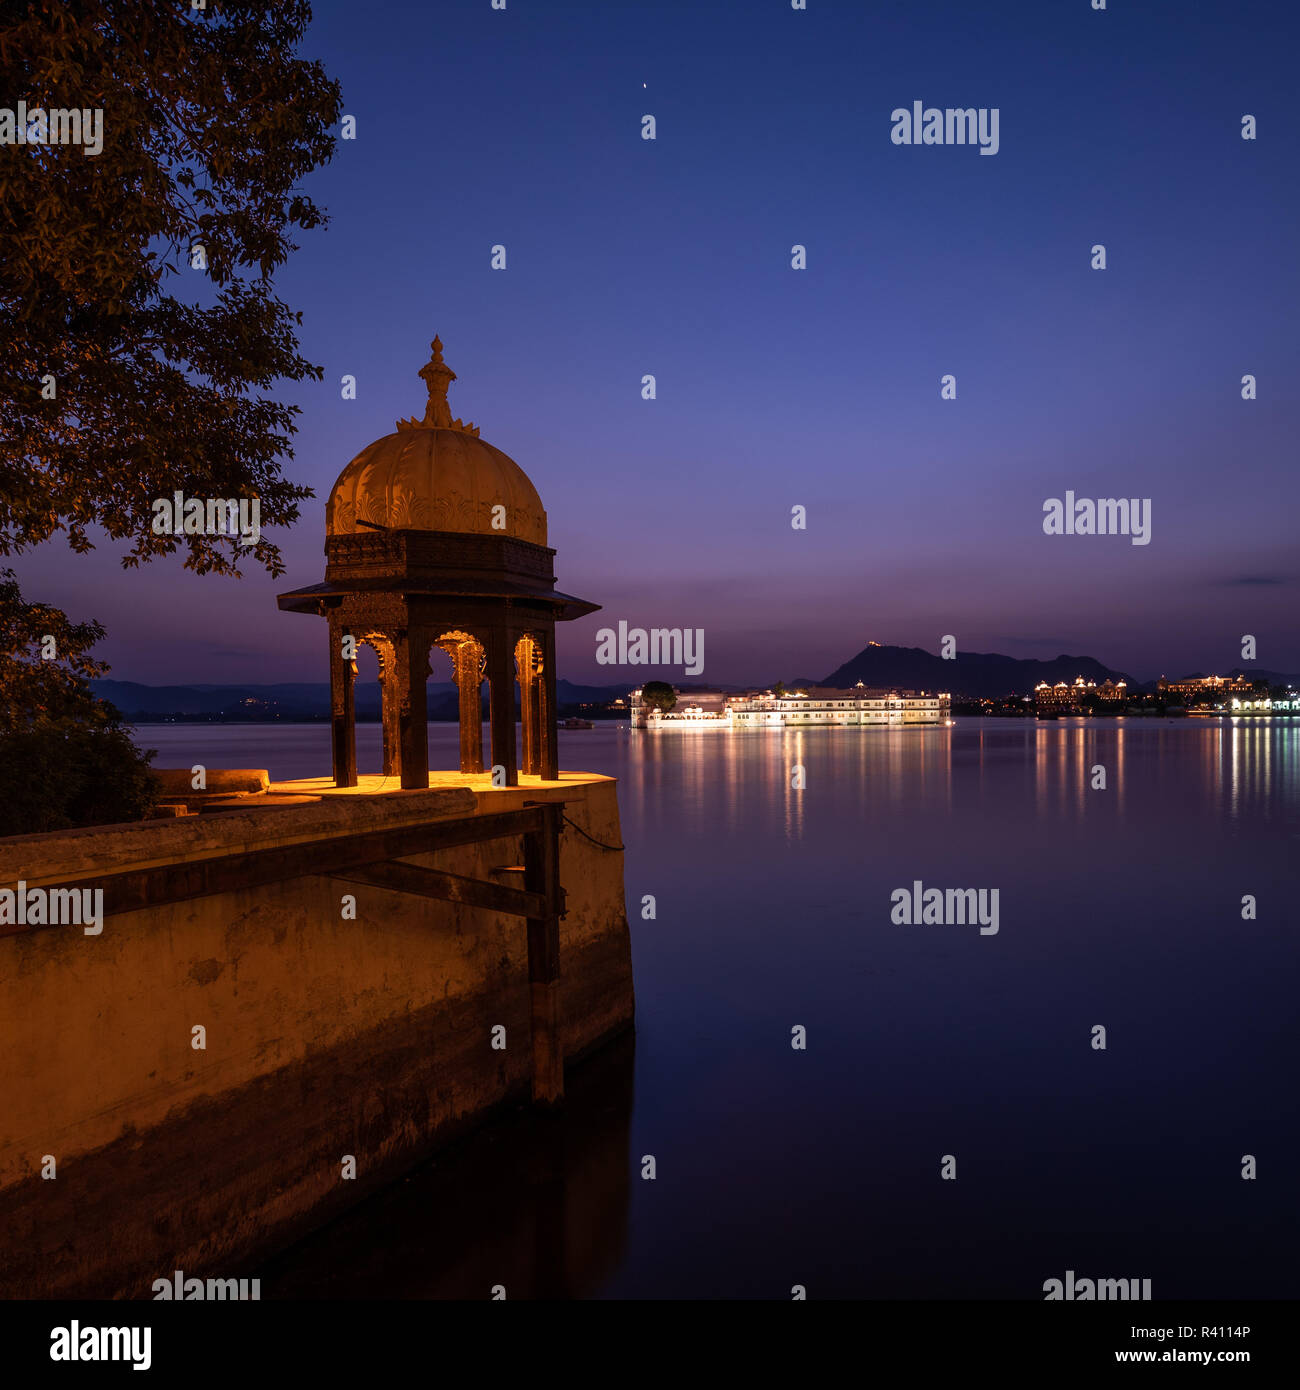 Un ornato Chhatri o baldacchino tipico della architettura Rajasthana di notte con il lago Pichola in background. Foto Stock